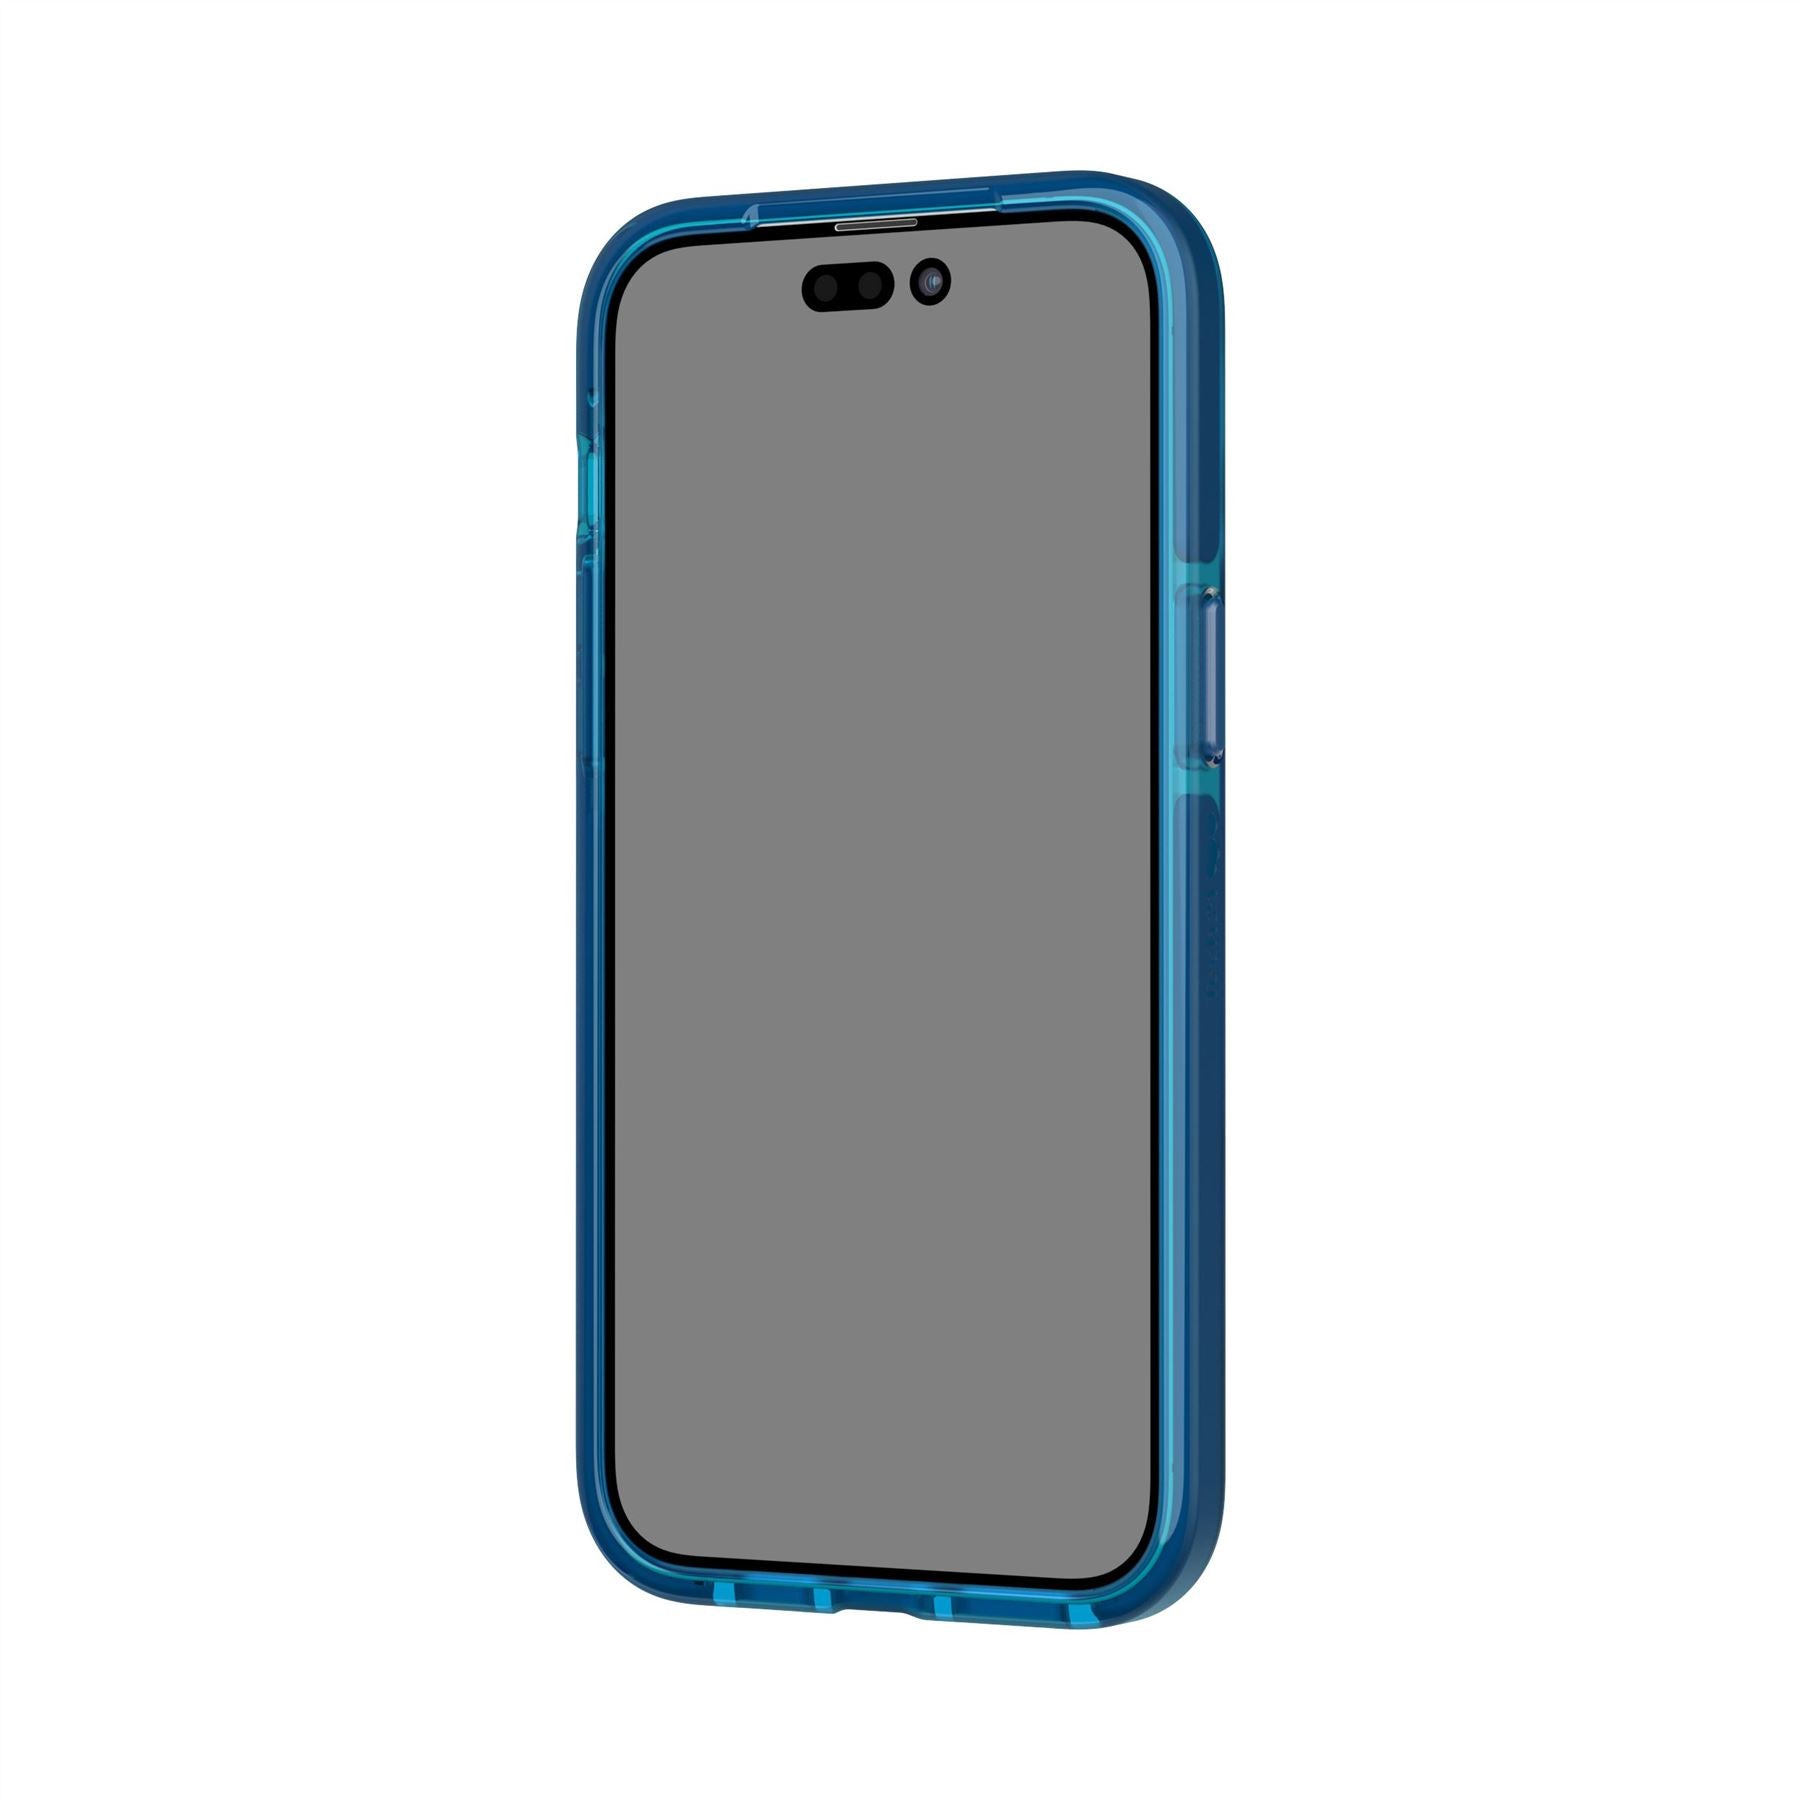 Evo Check - Apple iPhone 14 Pro Max Case - Classic Blue